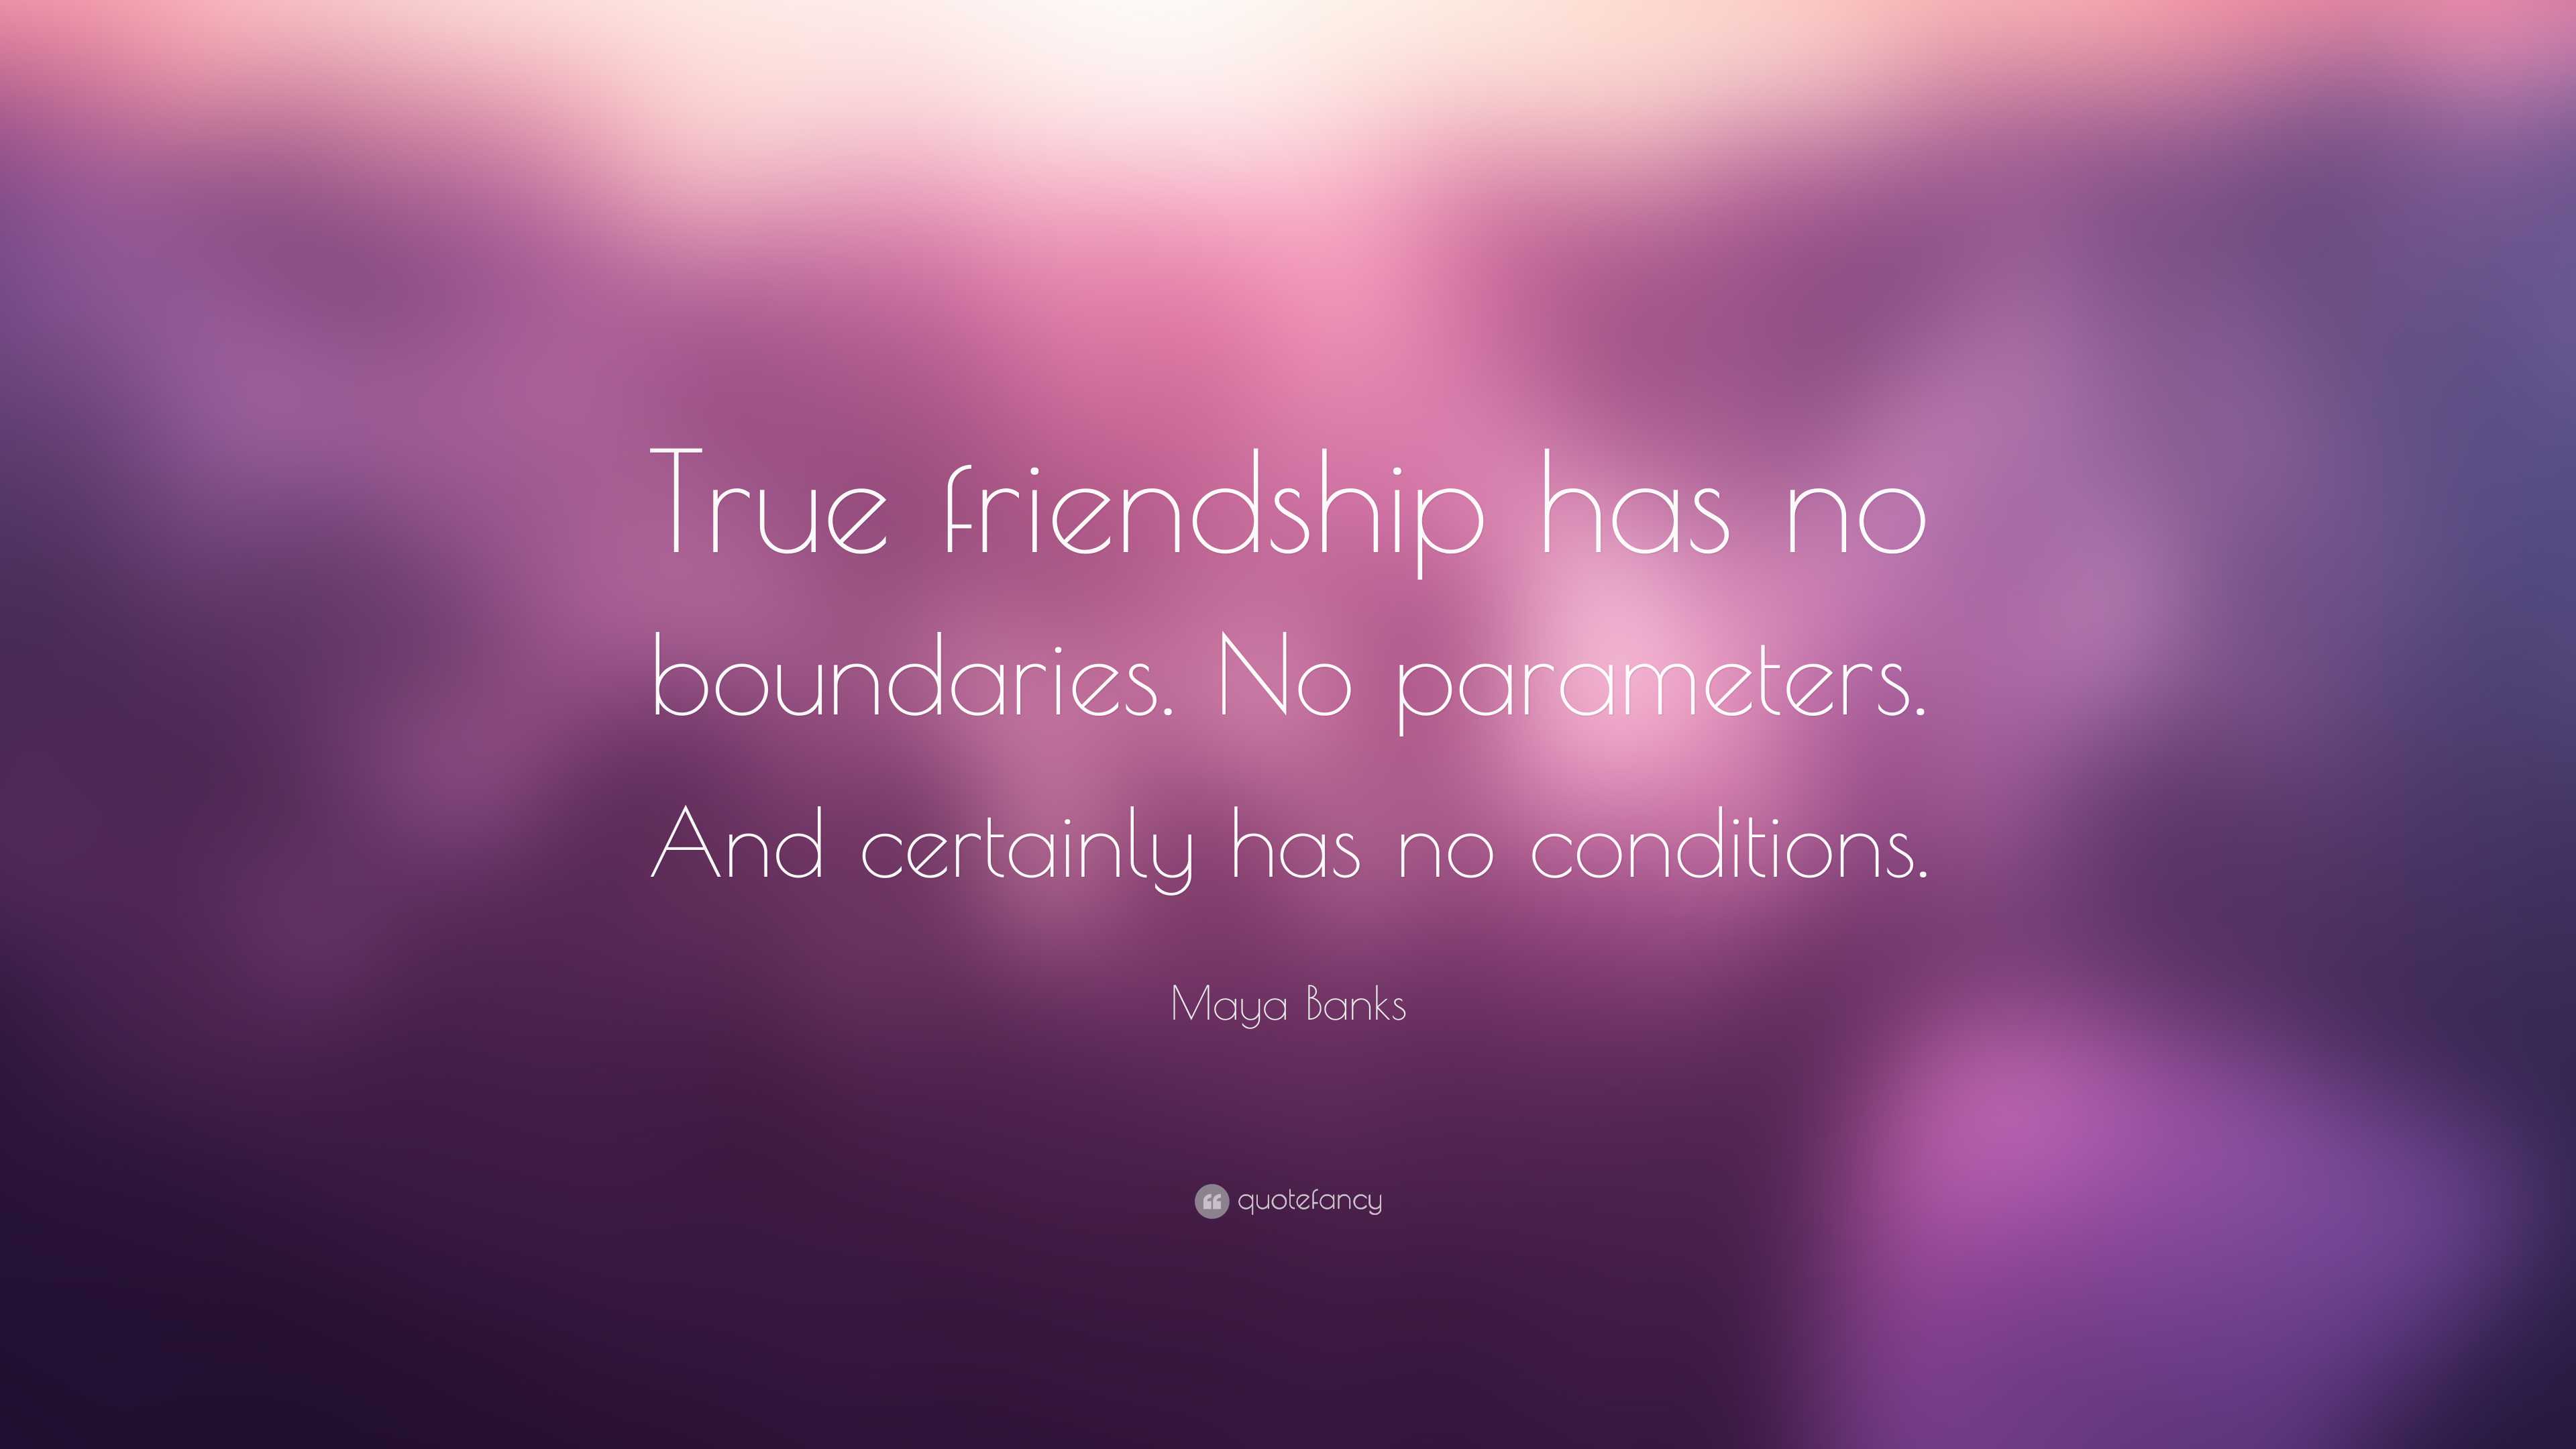 what is true friendship